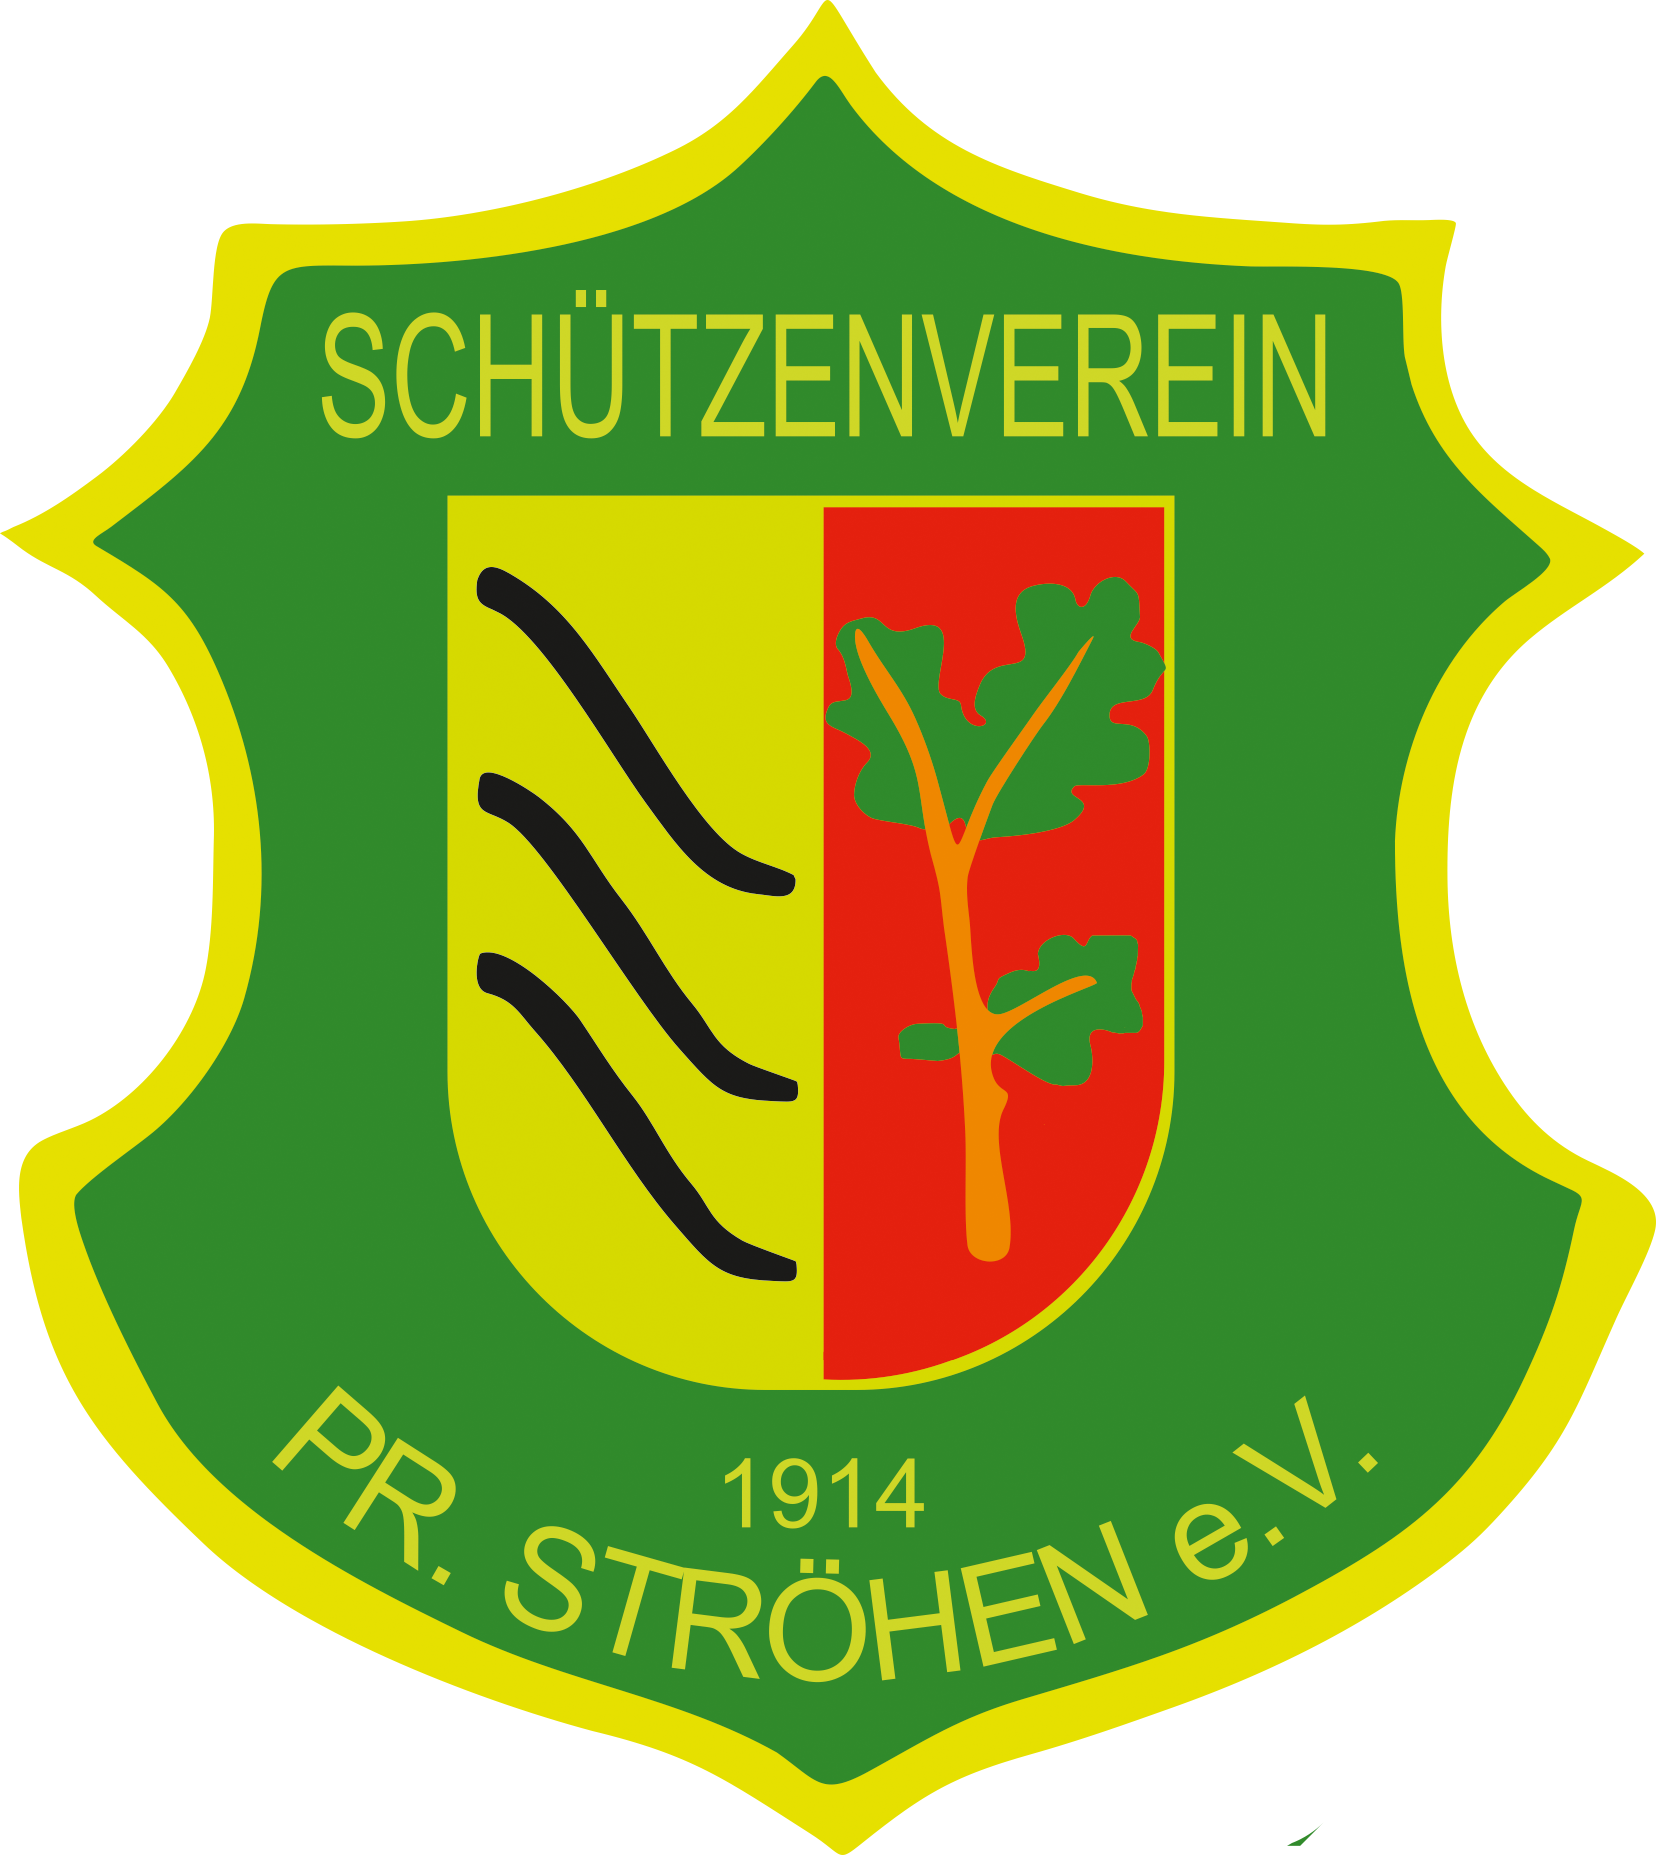 Schützenverein Pr. Ströhen